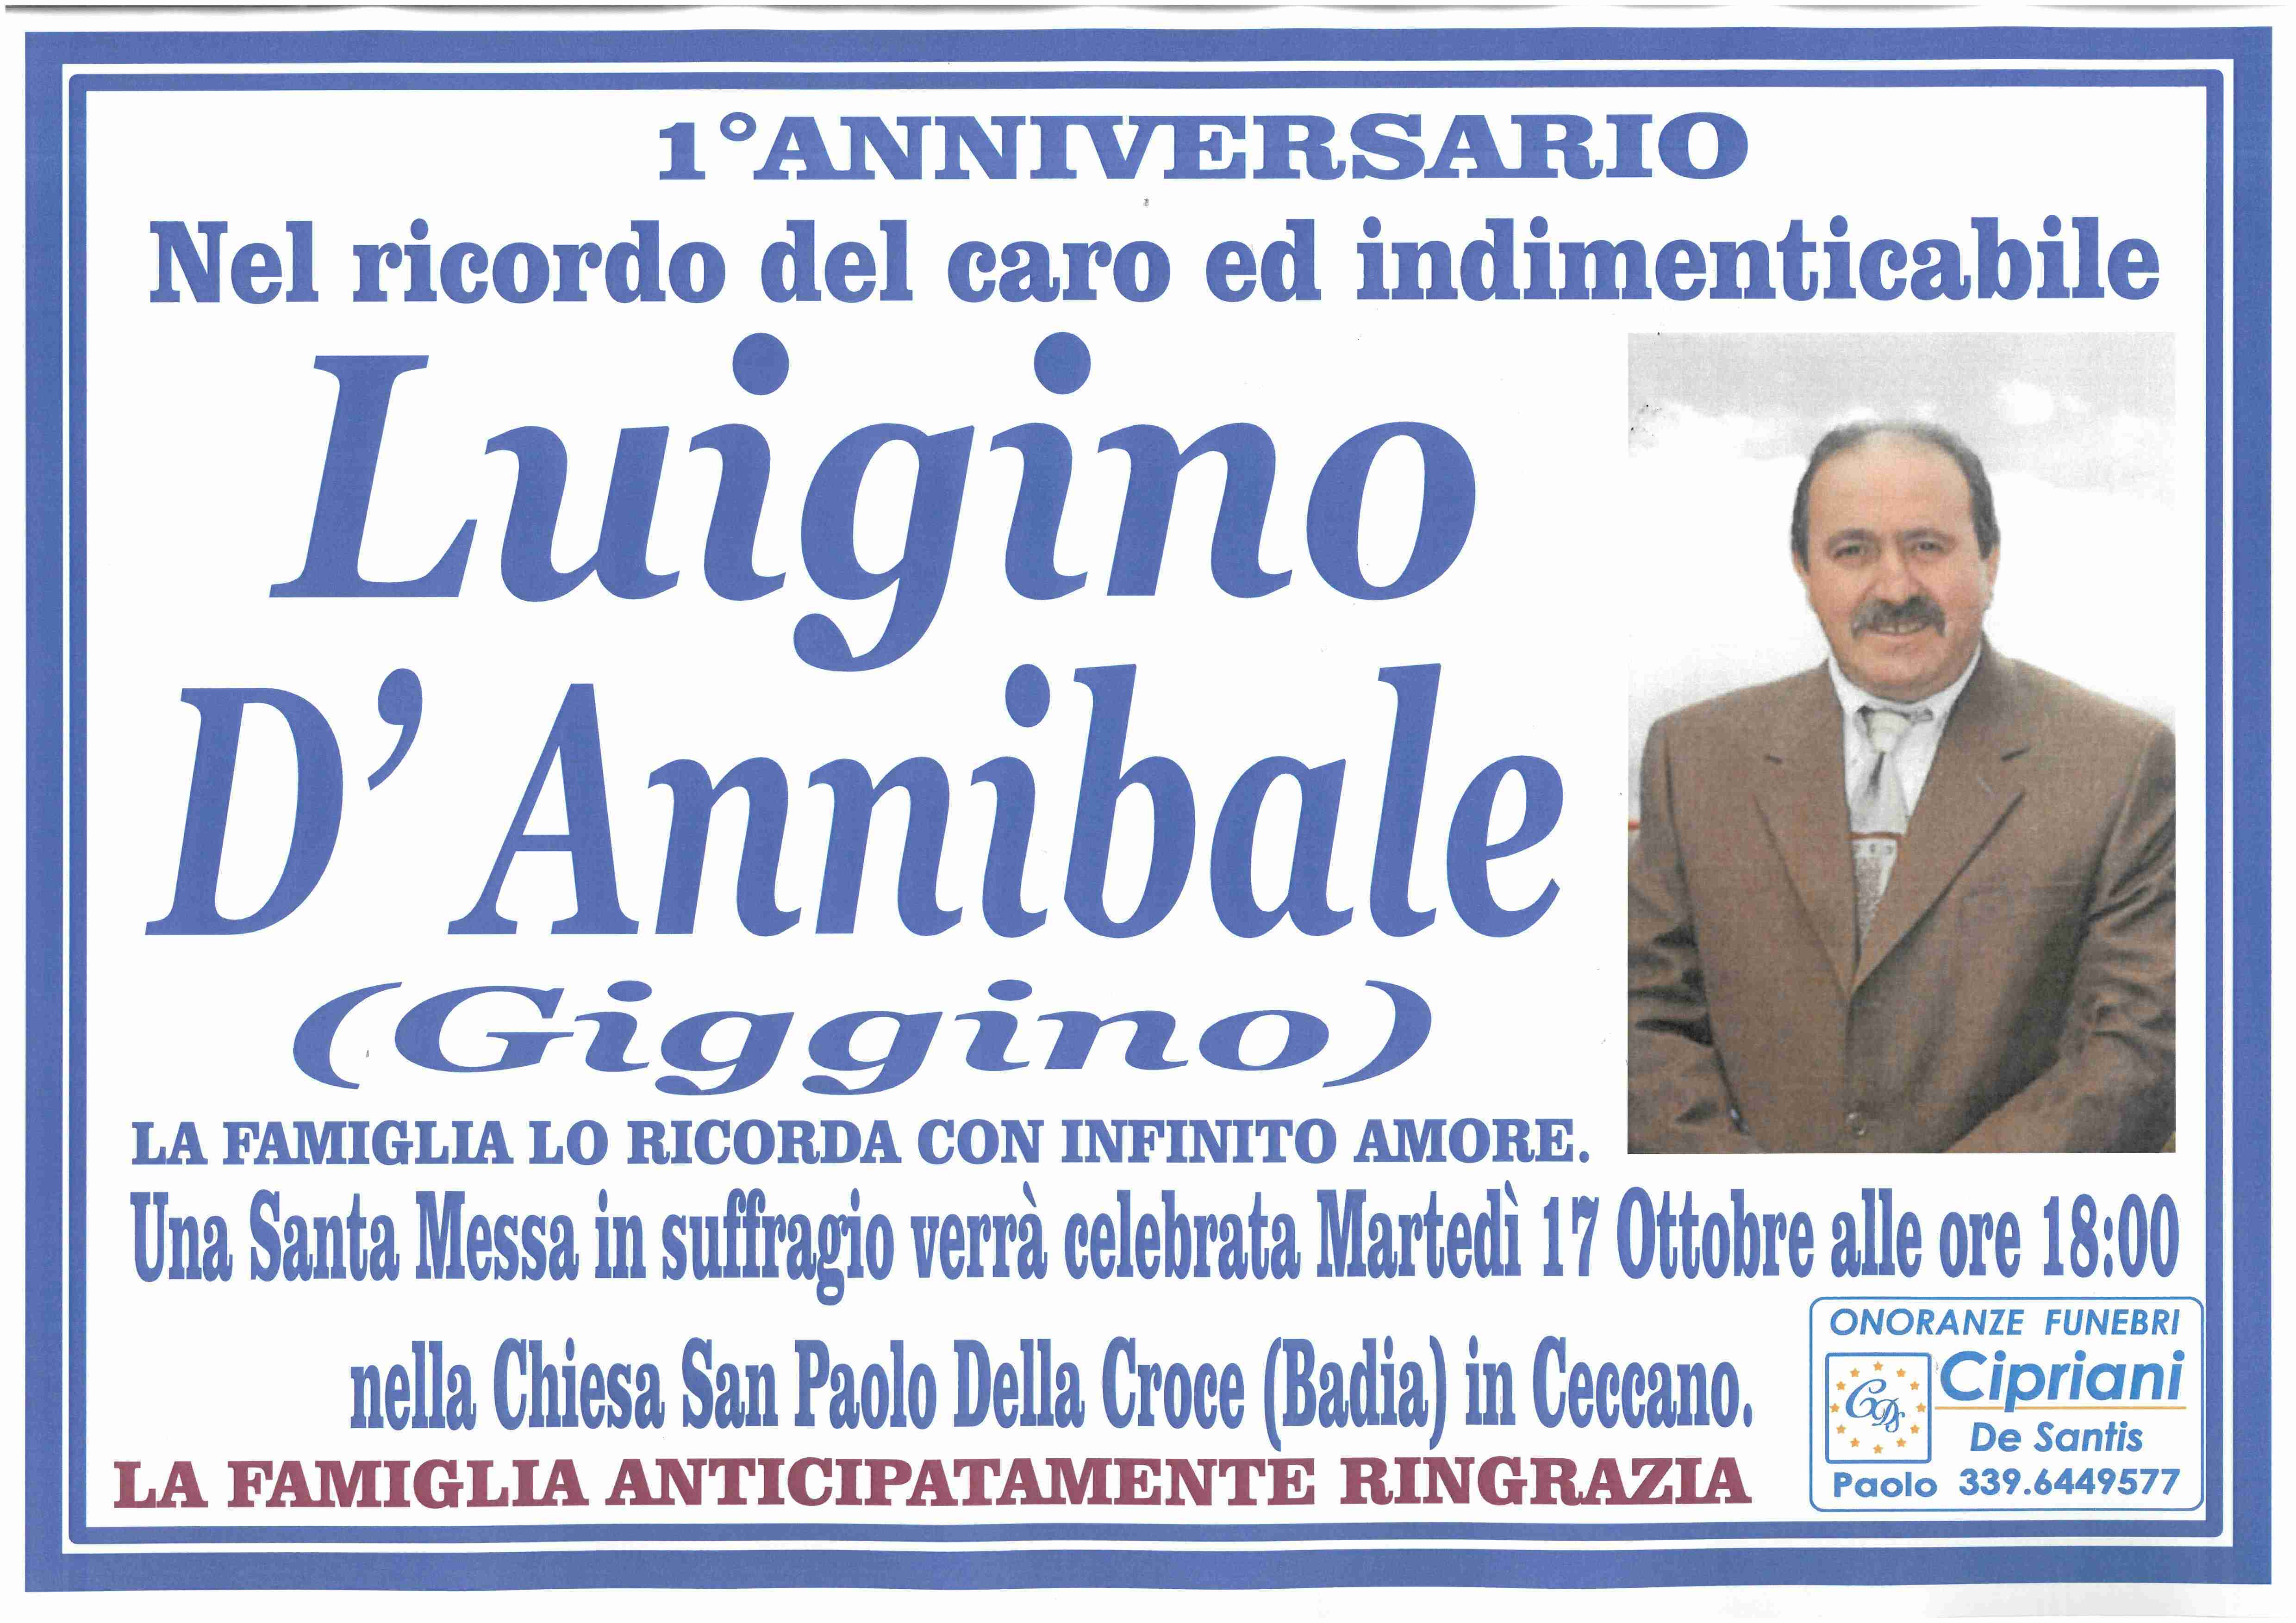 Luigino D'Annibale